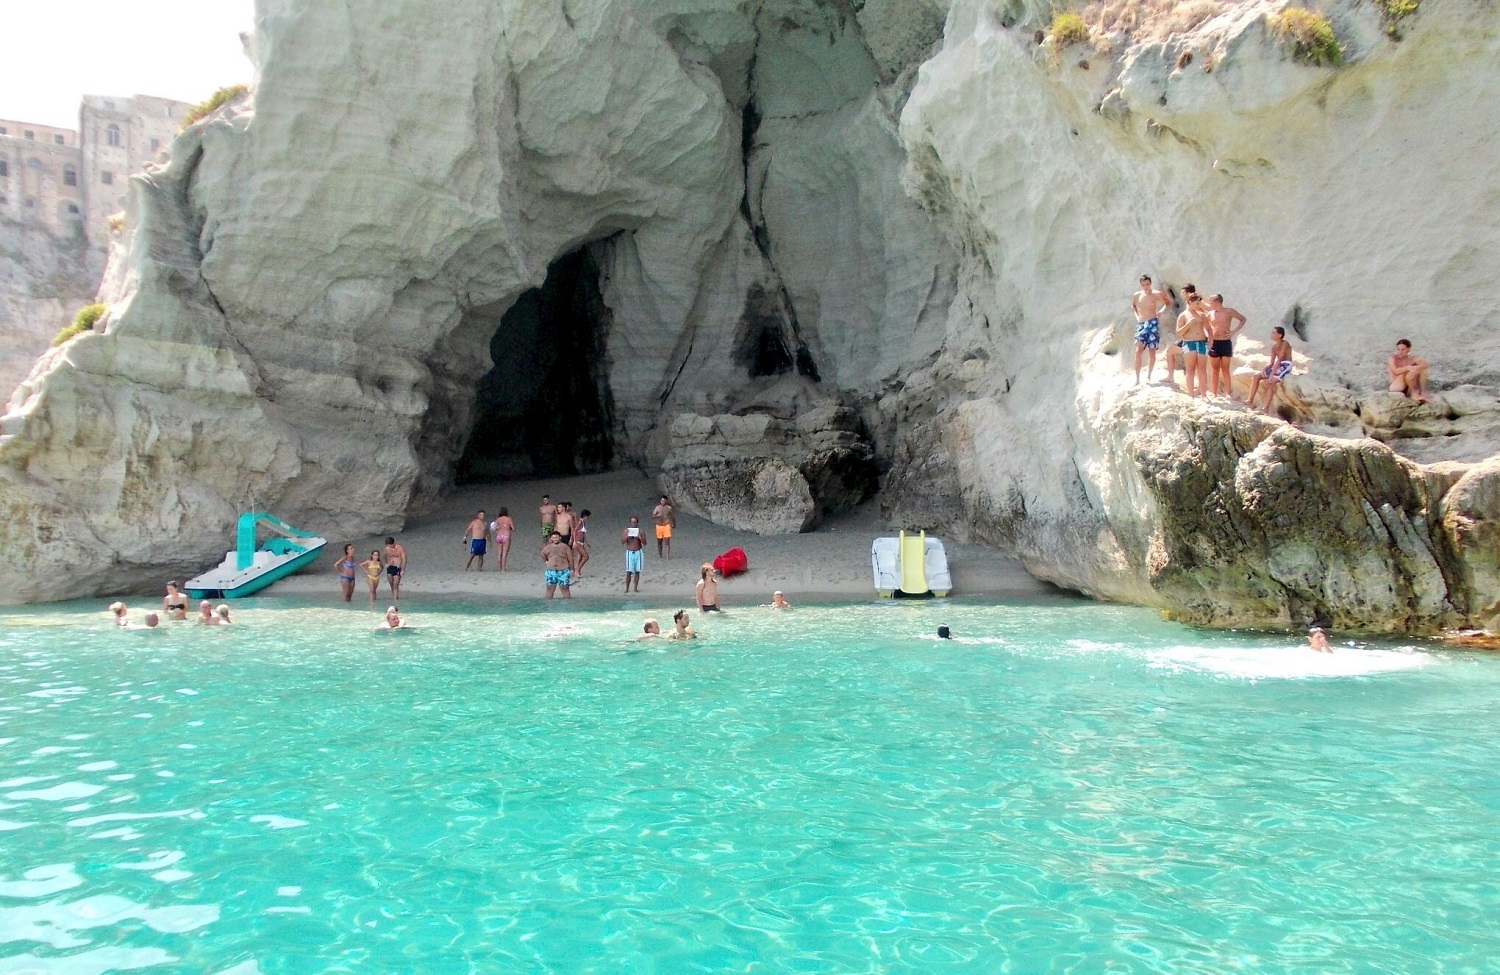 La spiaggia nascosta nella grotta del Palombaro